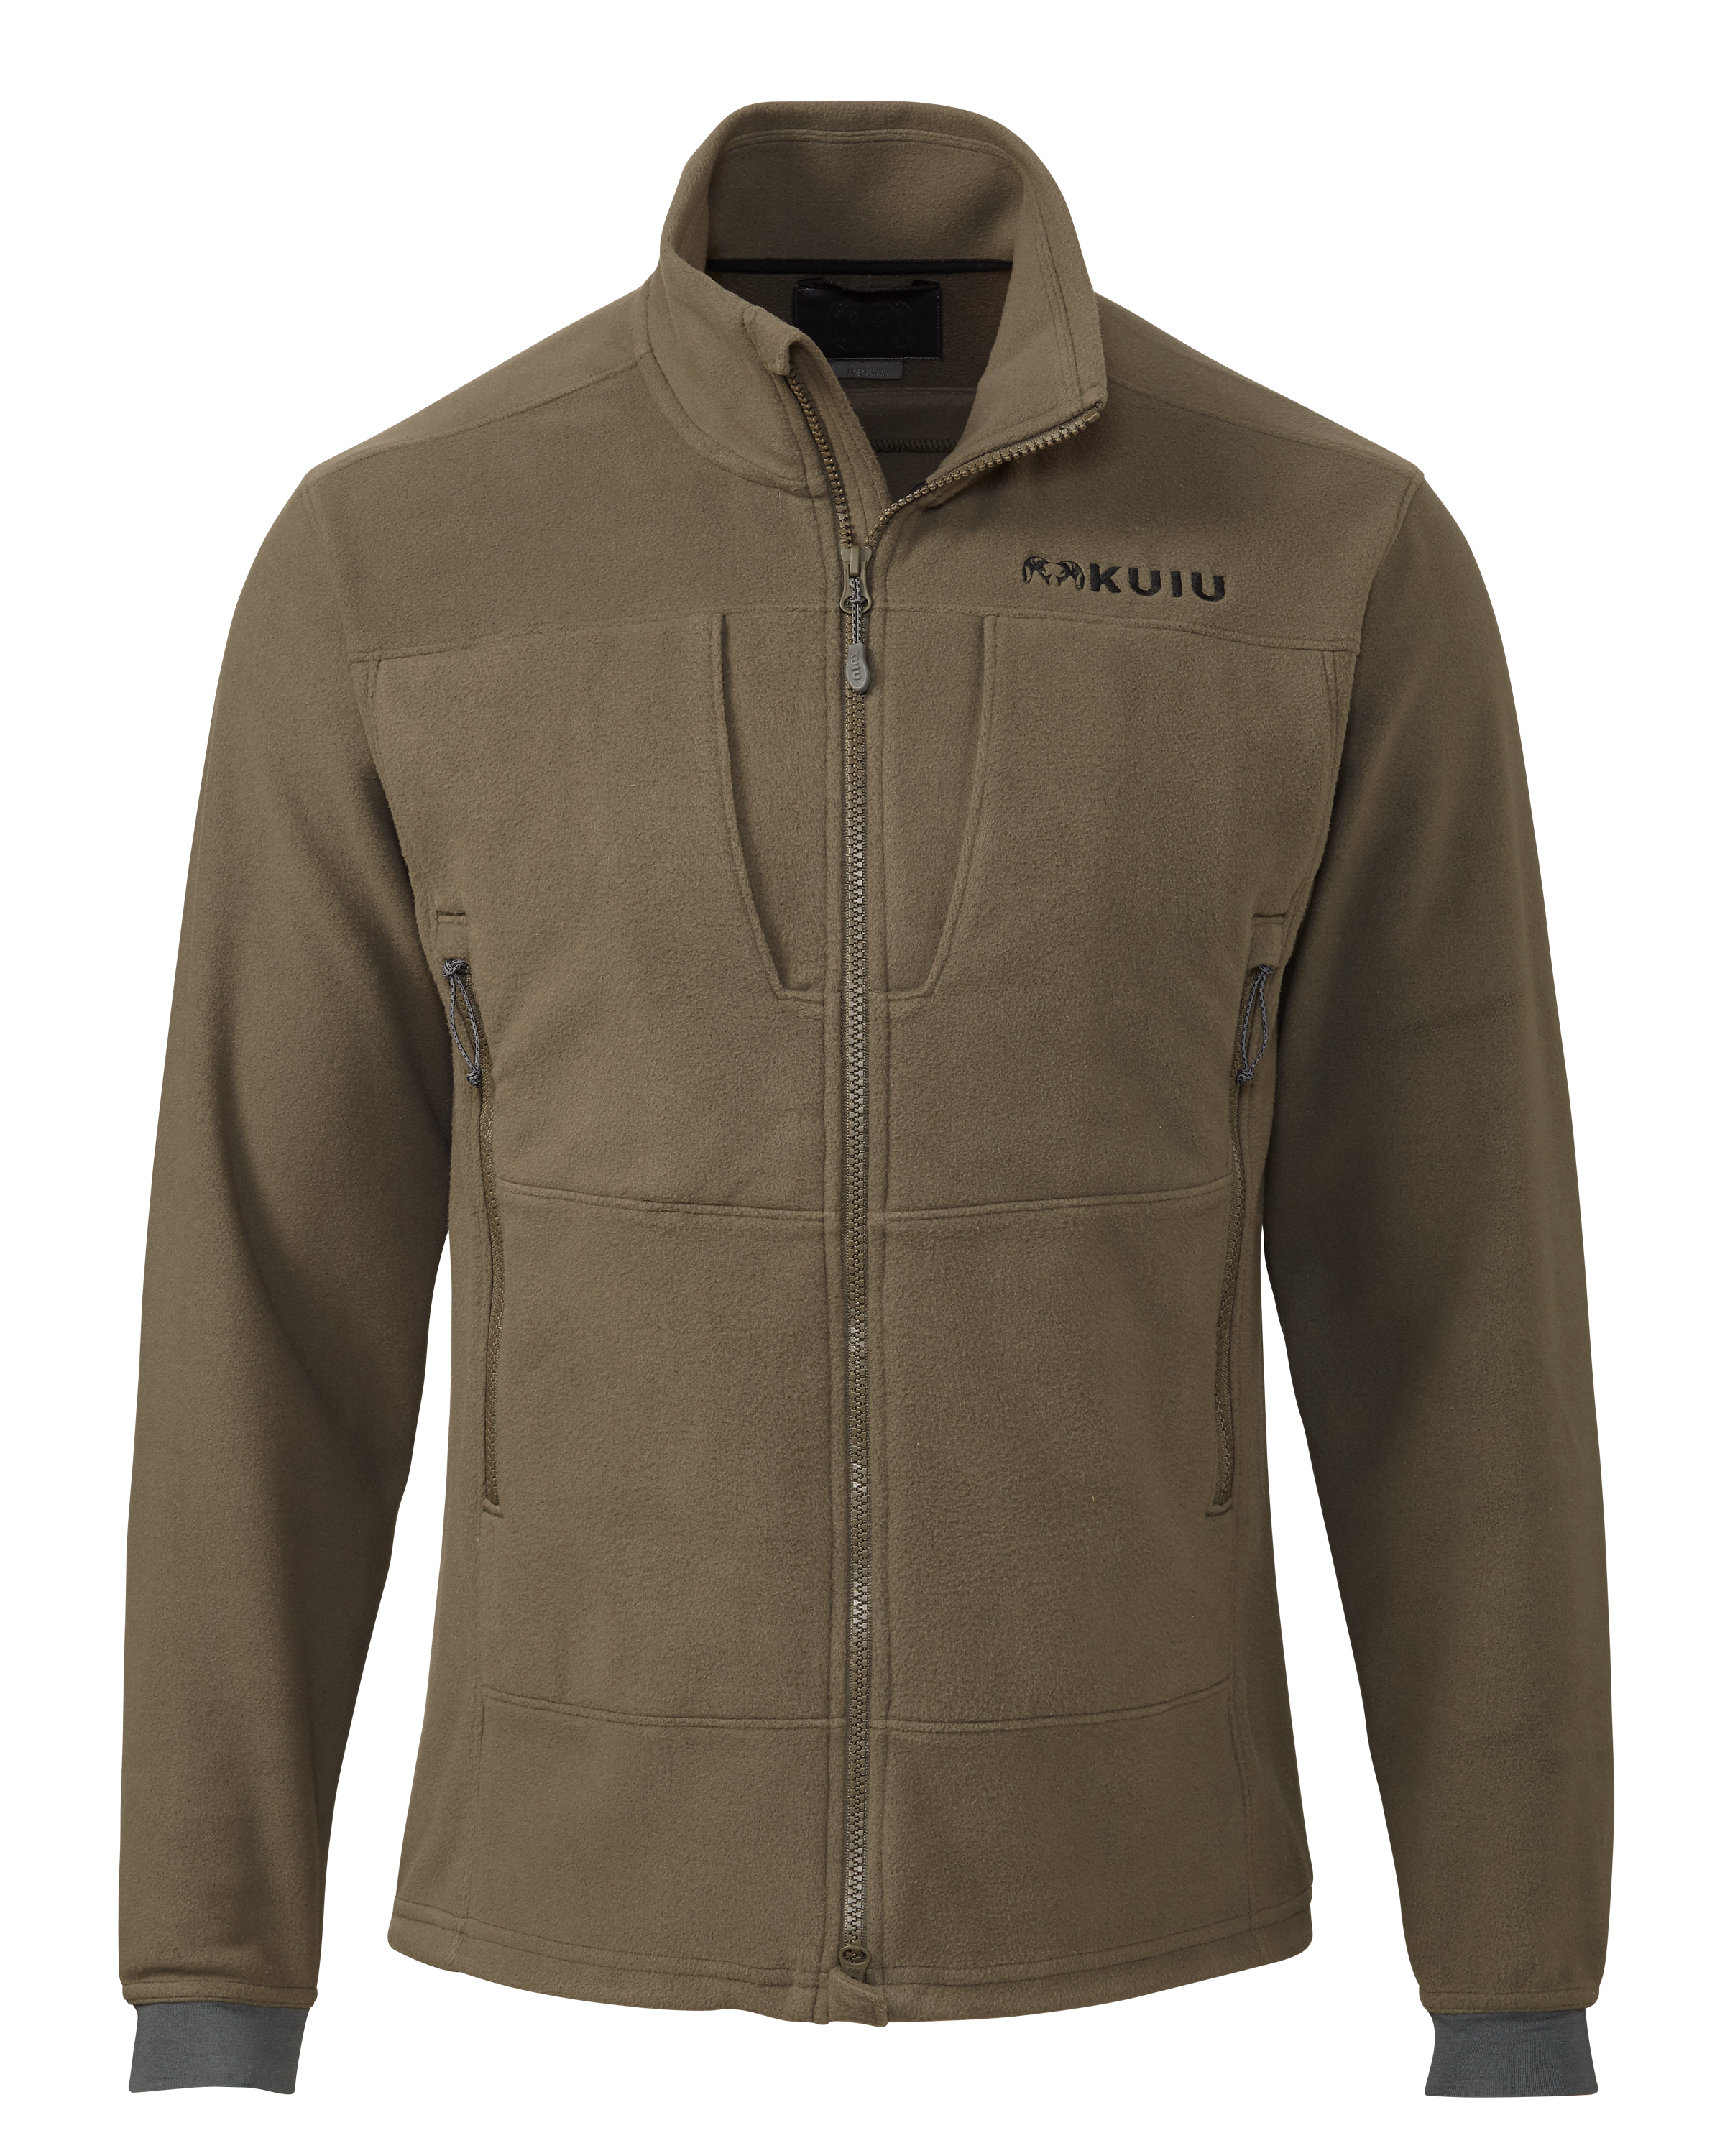 KUIU Wind Pro Fleece Full Zip Hunting Jacket in Ash | Size 3XL